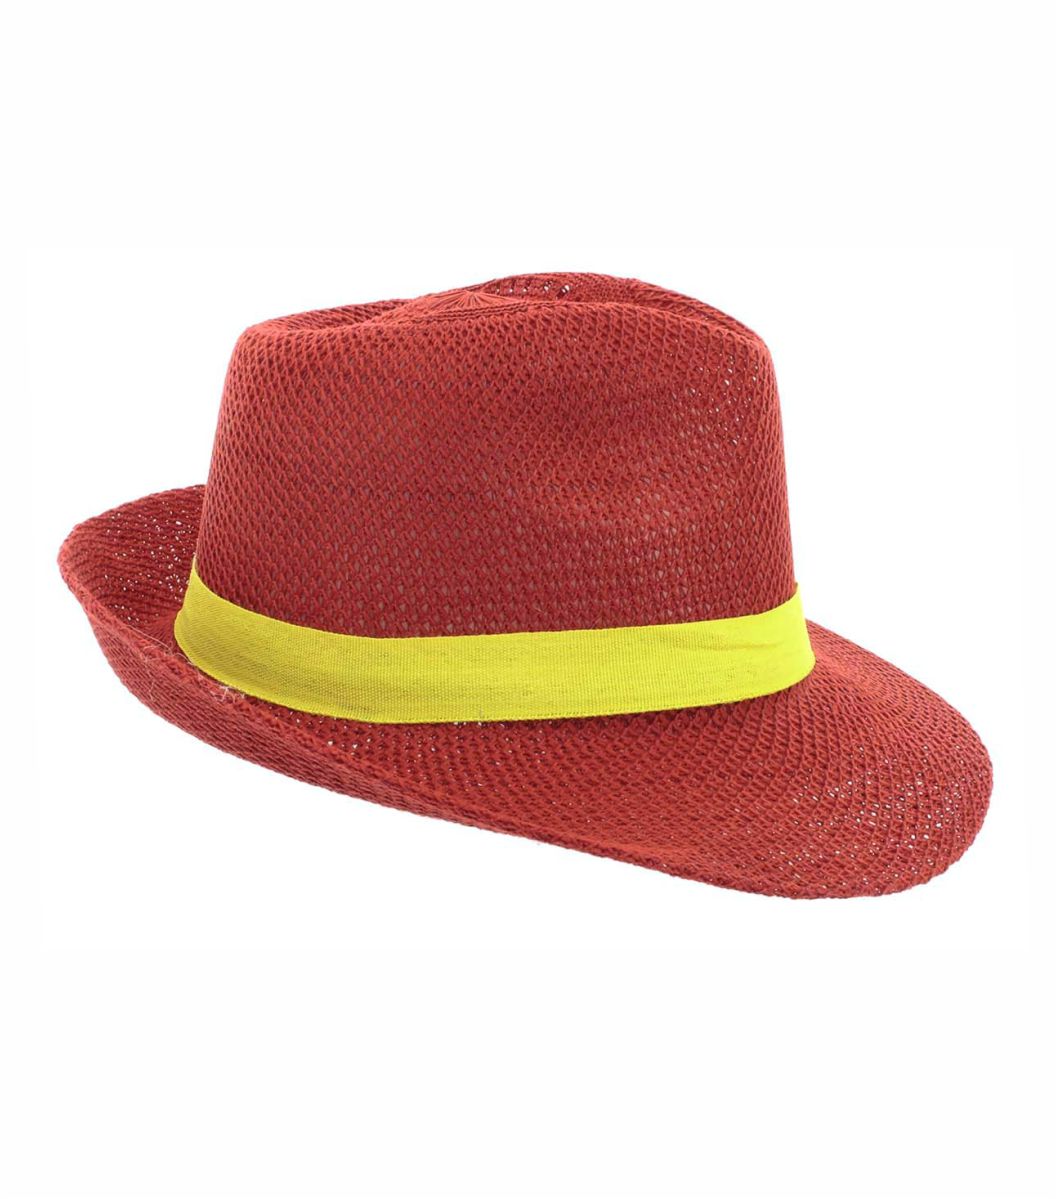 Sombrero Ala Ancha rojo Publicitario